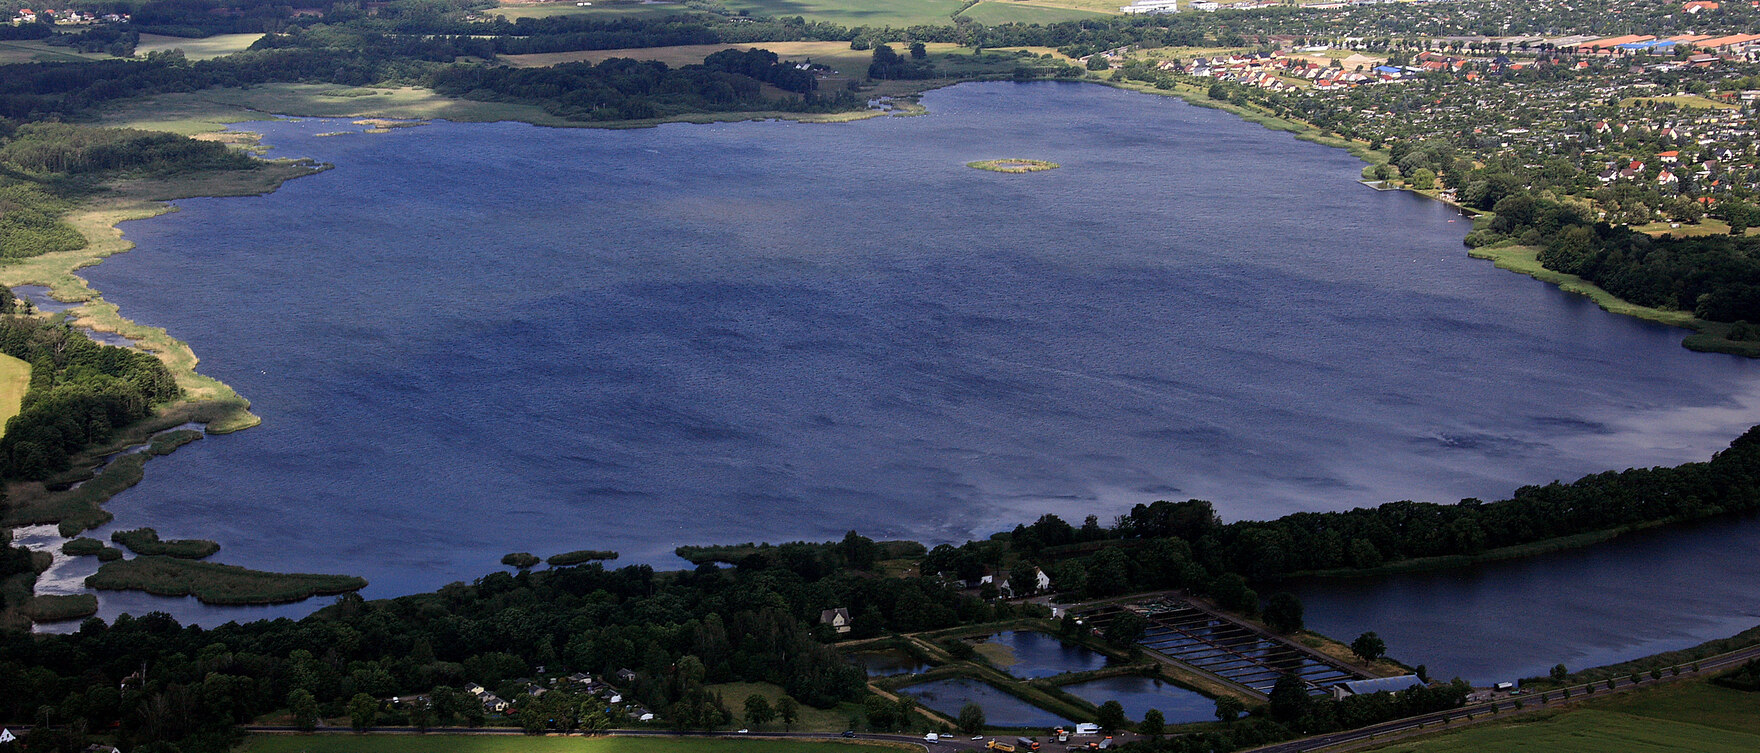 Luftbild eines Sees 